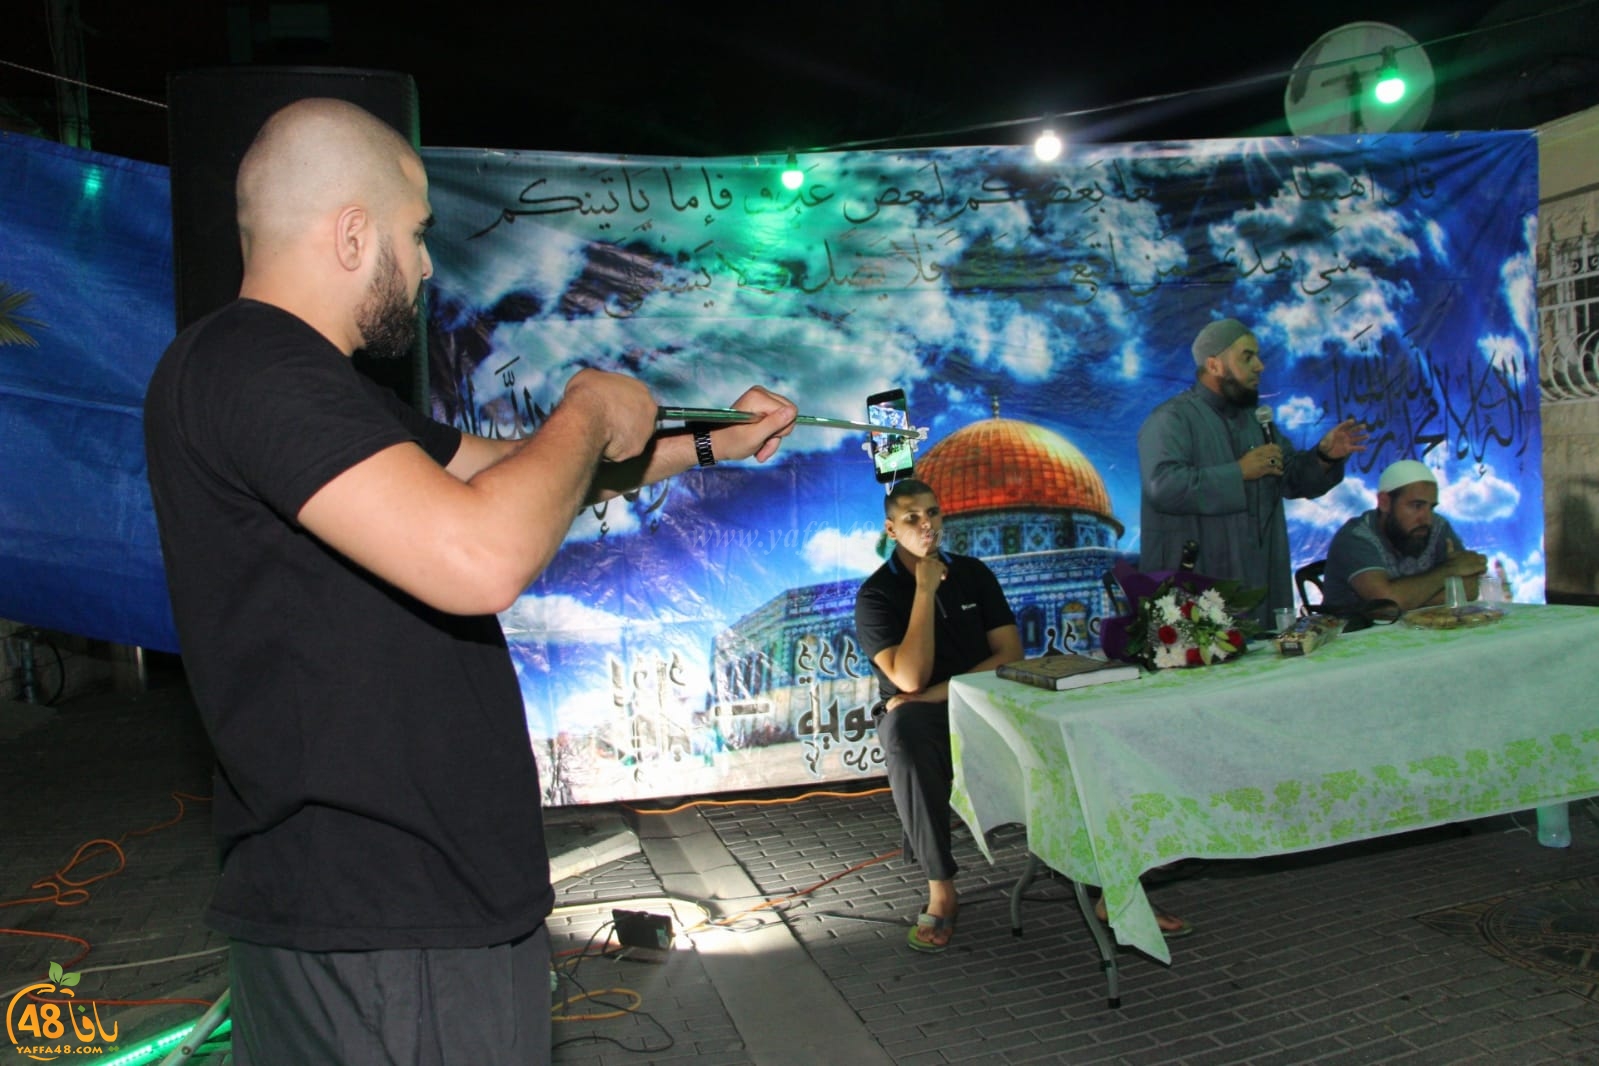  بالصور: خيمة الهدى الدعوية بيافا تستضيف الشيخ محمد عايش 